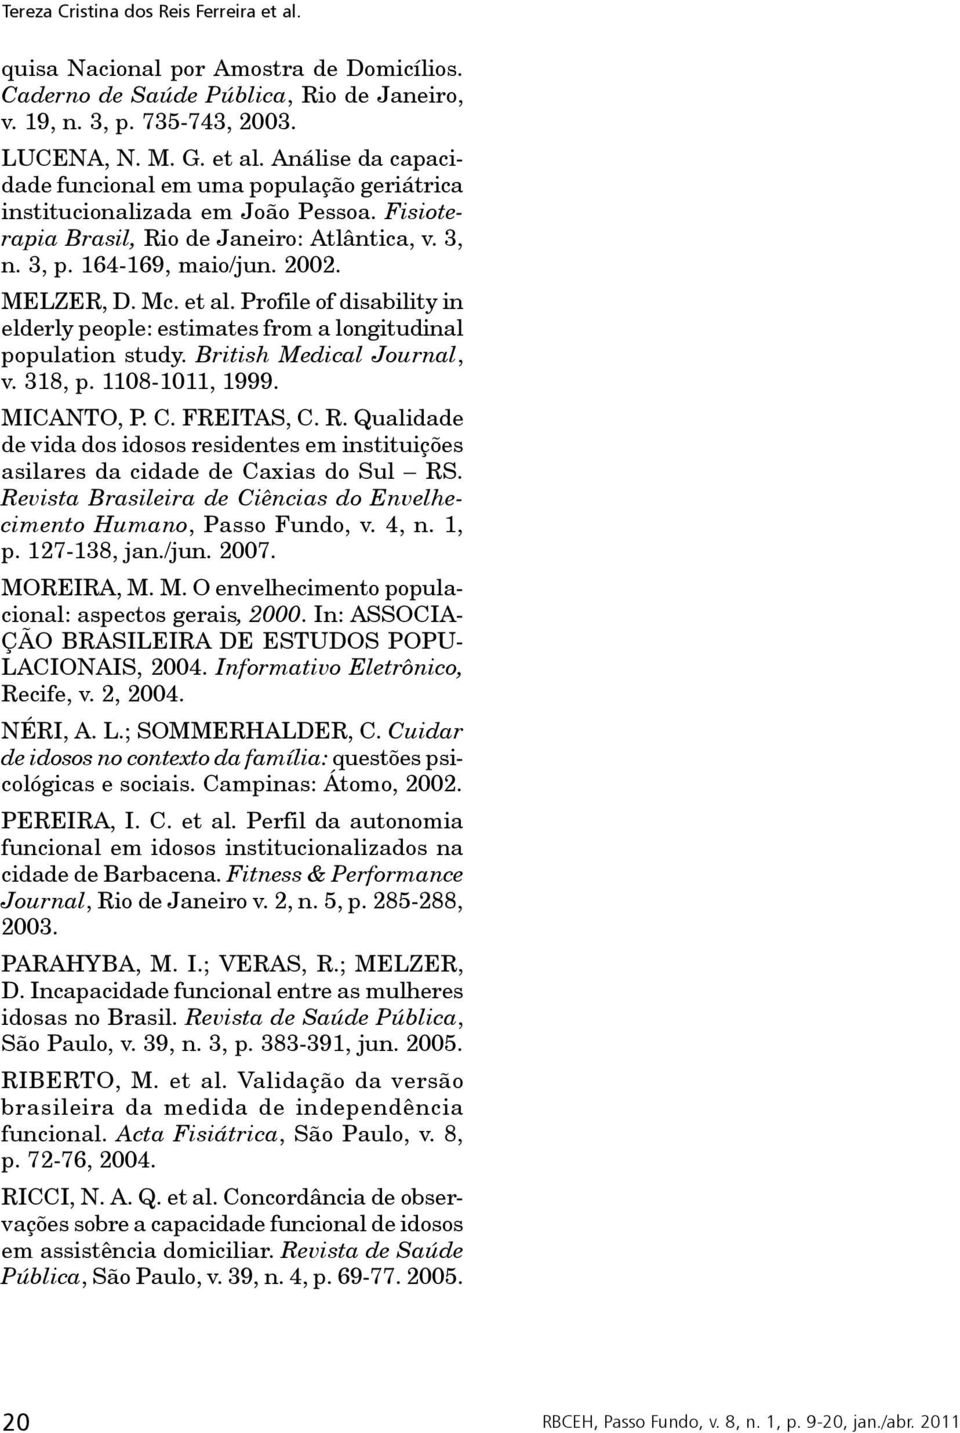 British Medical Journal, v. 318, p. 1108-1011, 1999. MICANTO, P. C. FREITAS, C. R. Qualidade de vida dos idosos residentes em instituições asilares da cidade de Caxias do Sul RS.